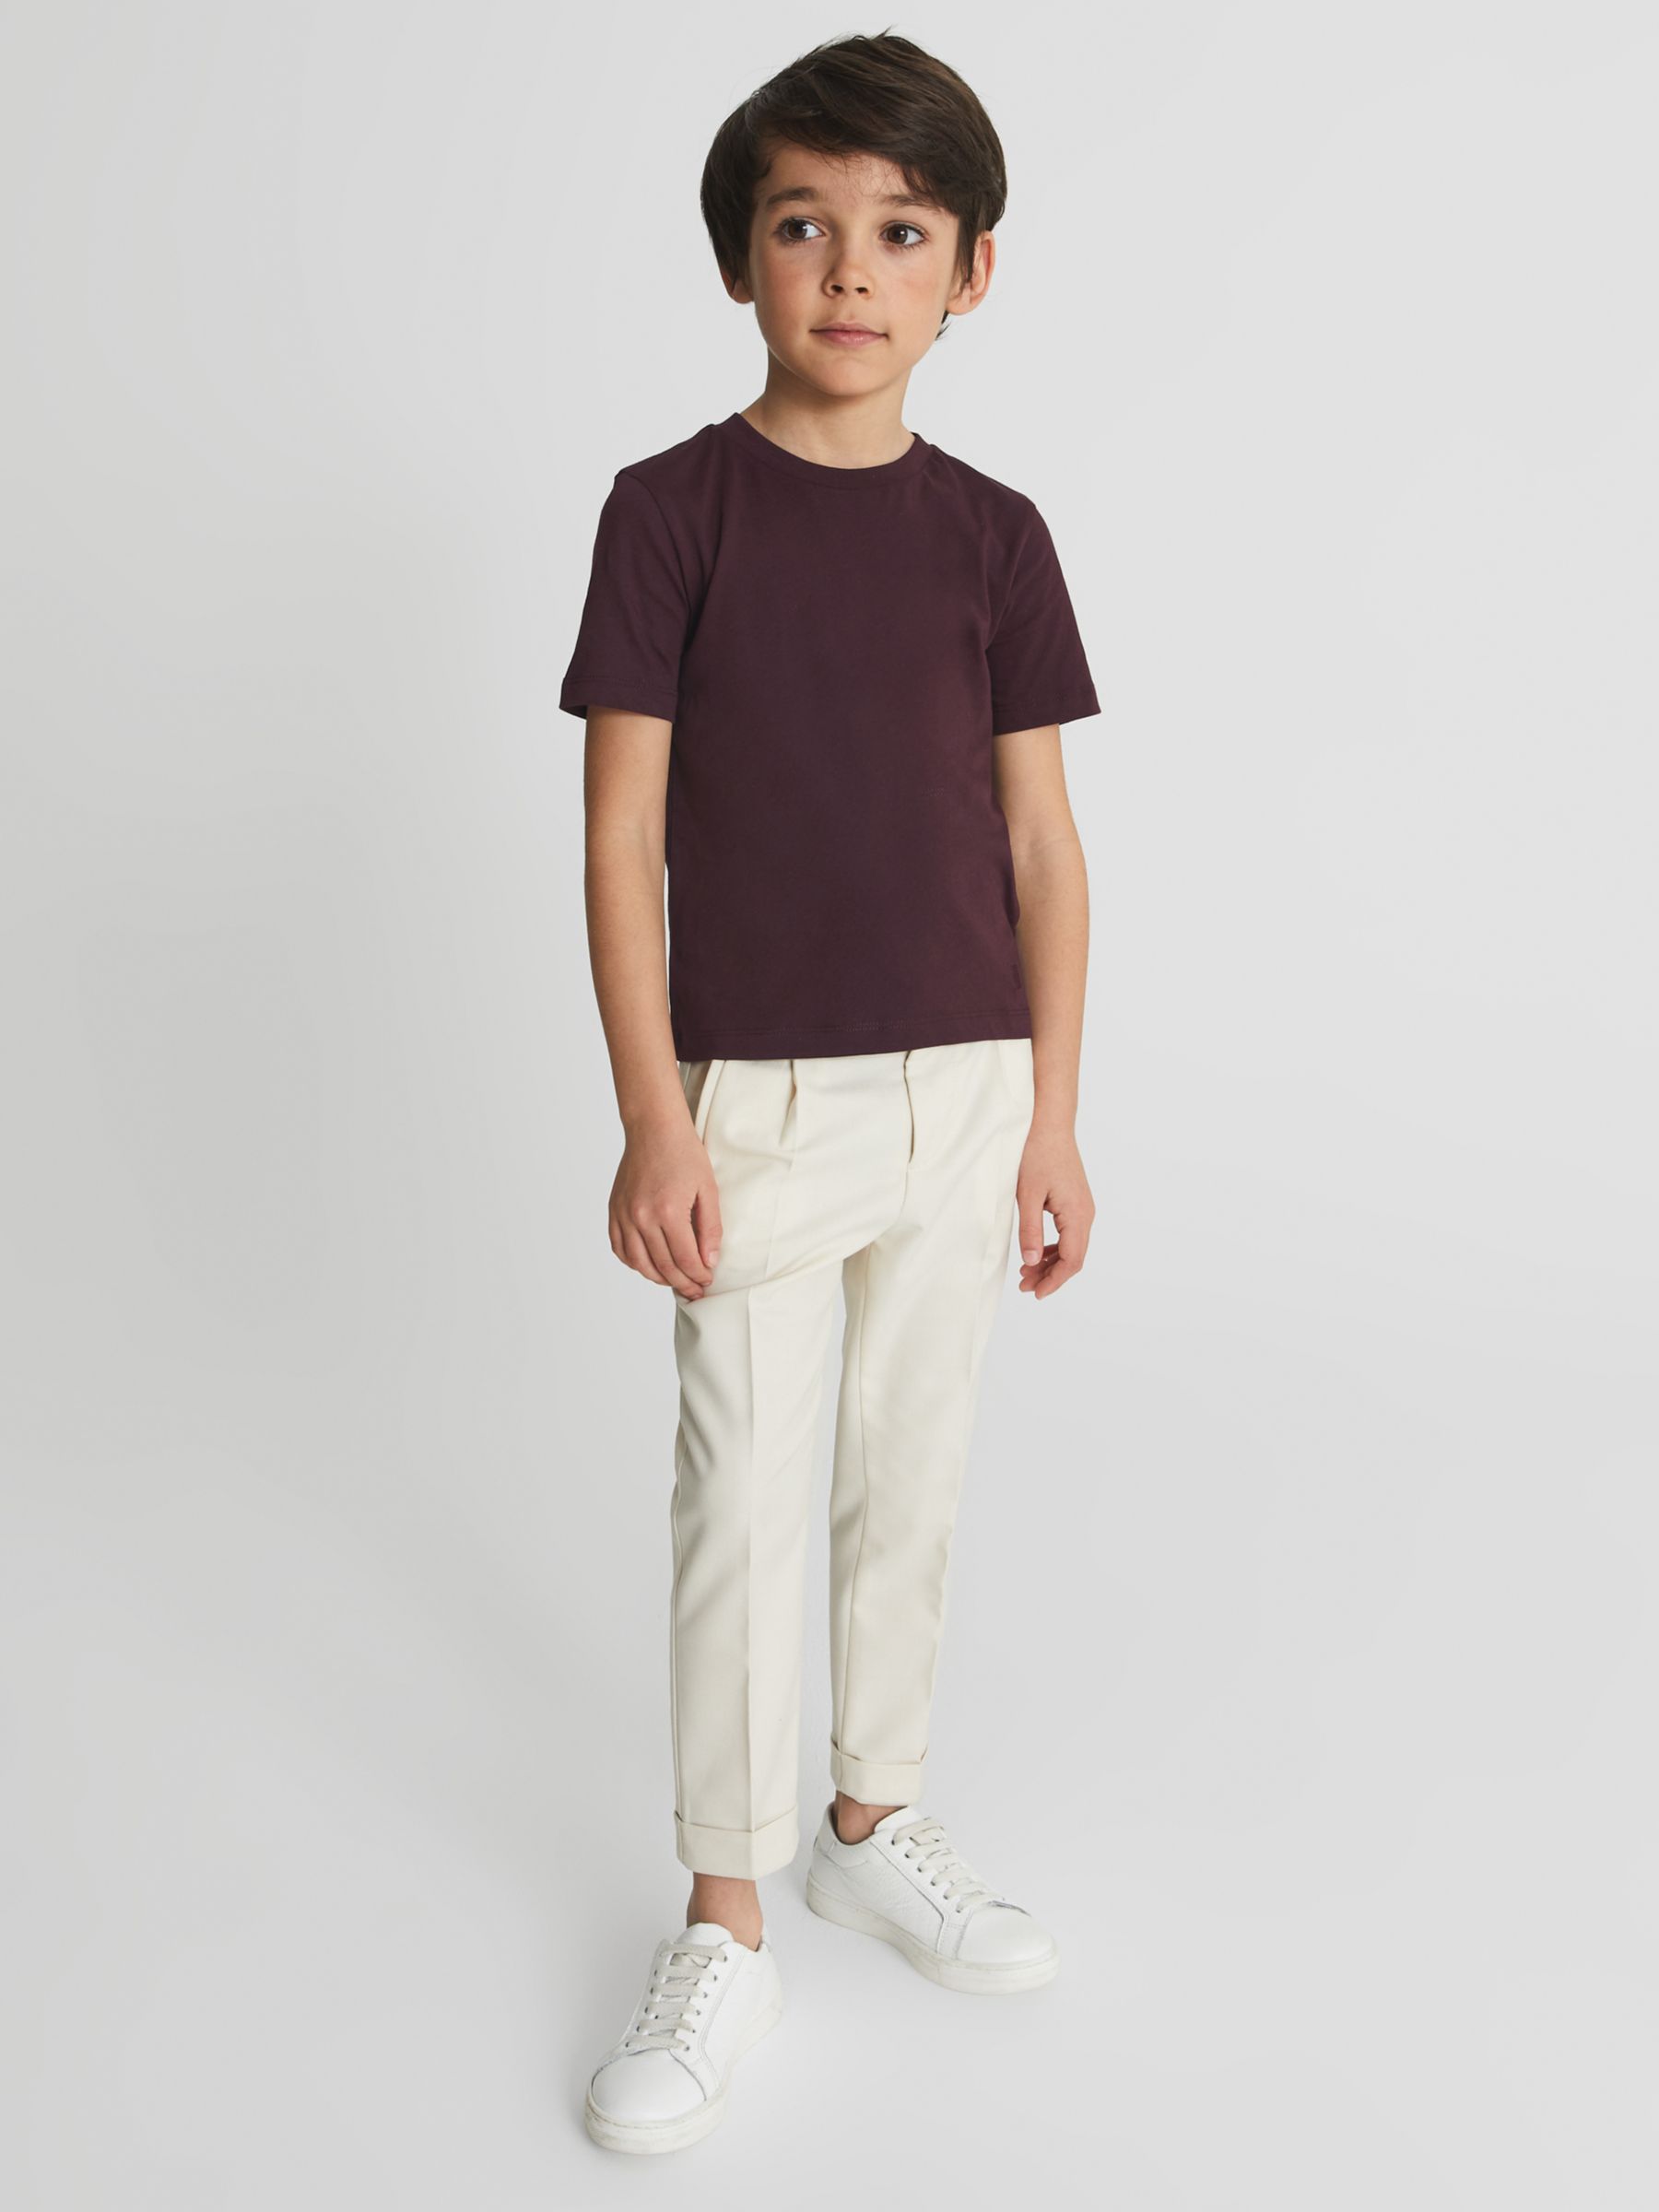 Детская футболка Bless с круглым вырезом Reiss, бордо детская футболка bless с круглым вырезом reiss белый